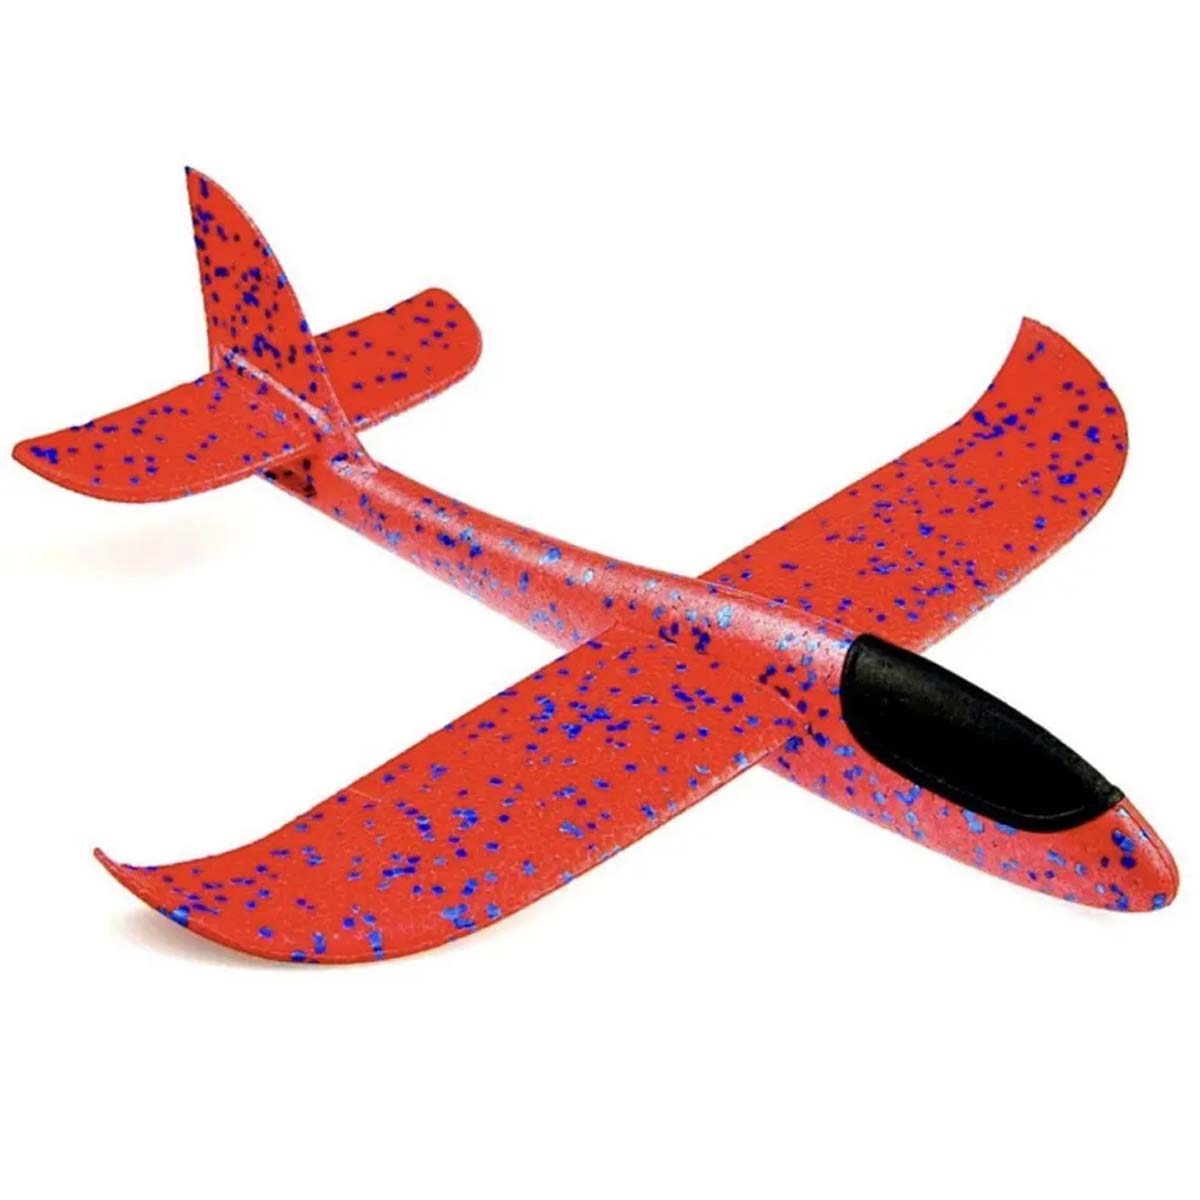 Метательный самолет из пенопласта, 45 см, цвет красный